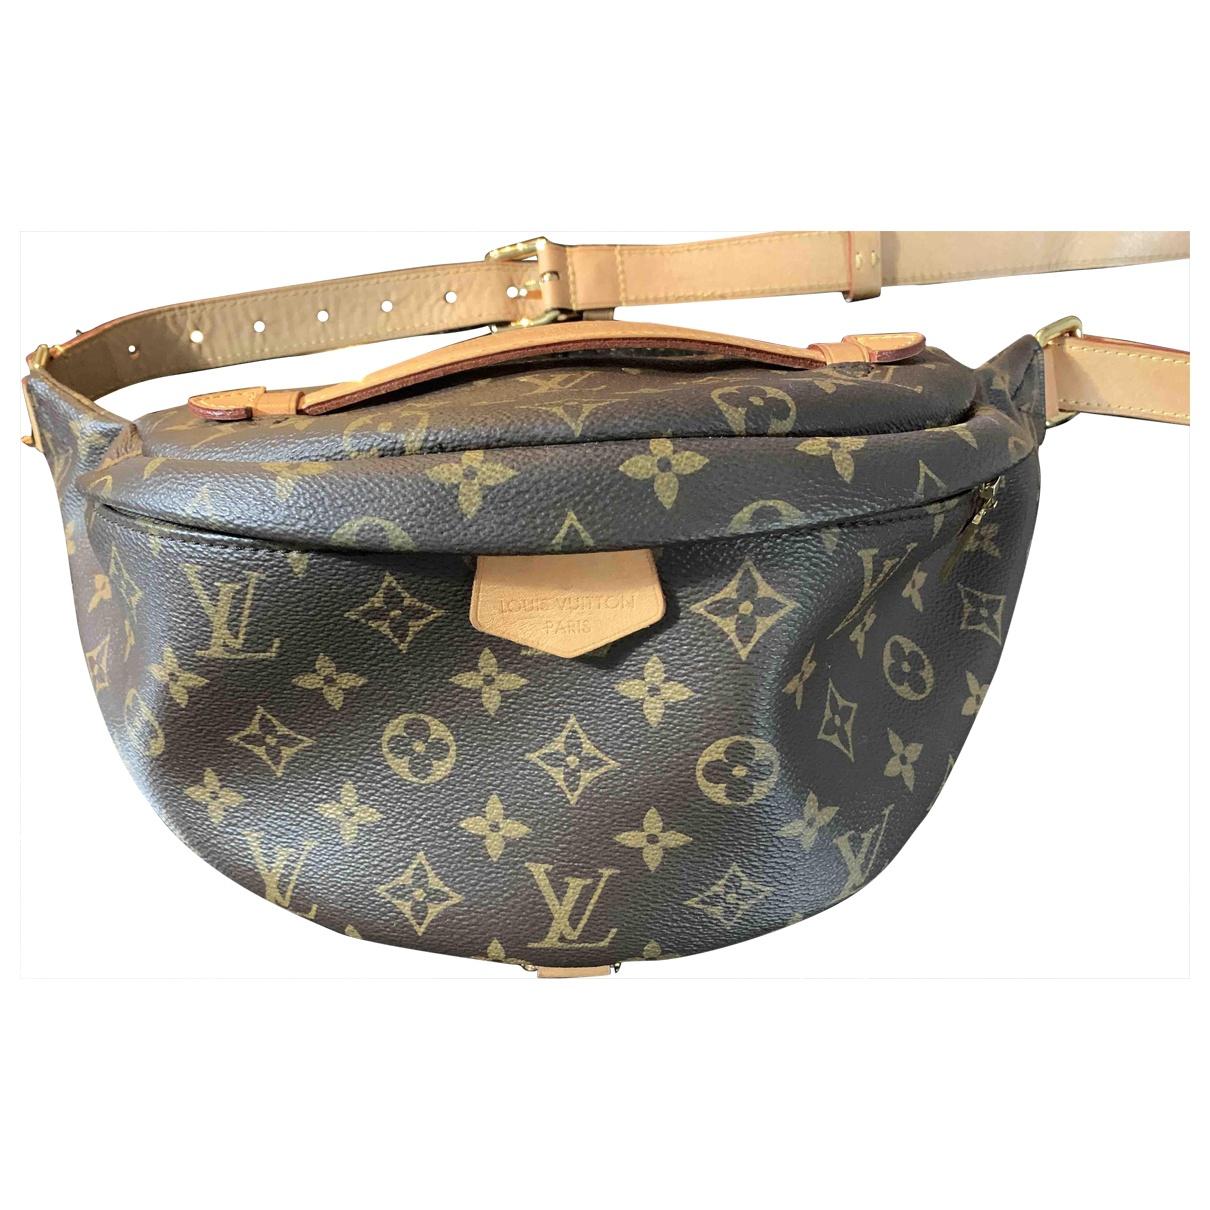 Lyst - Louis Vuitton Bum Bag / Sac Ceinture Cloth Clutch Bag in Brown